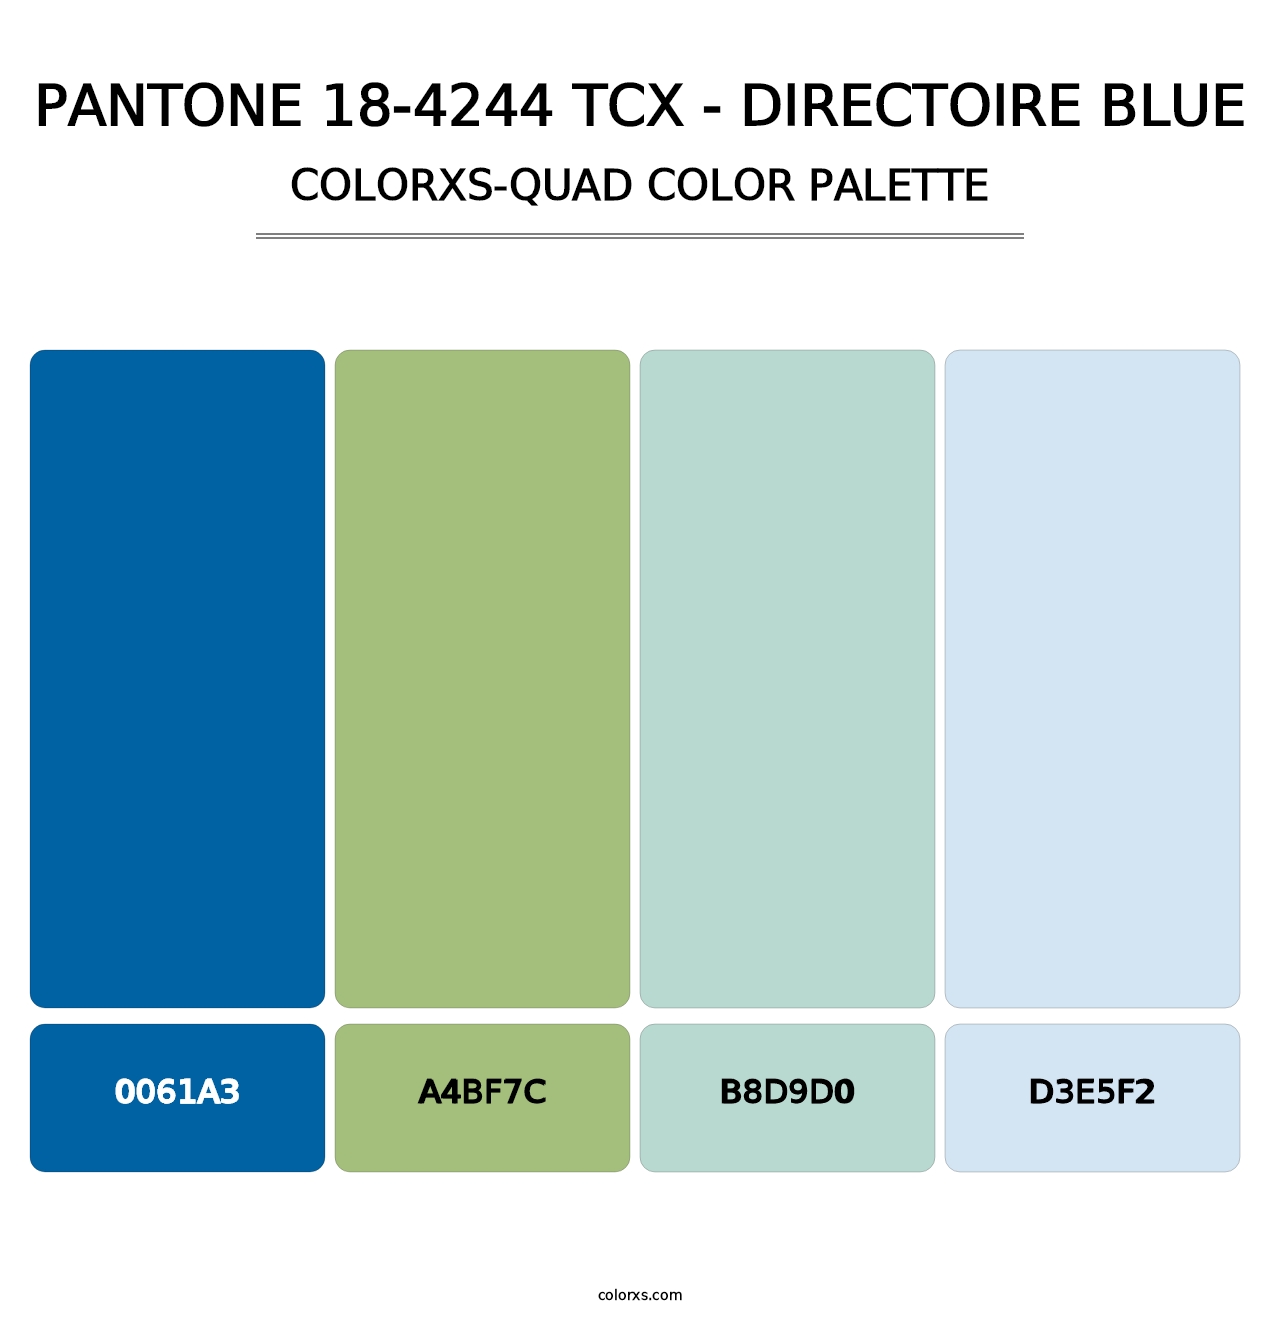 PANTONE 18-4244 TCX - Directoire Blue - Colorxs Quad Palette